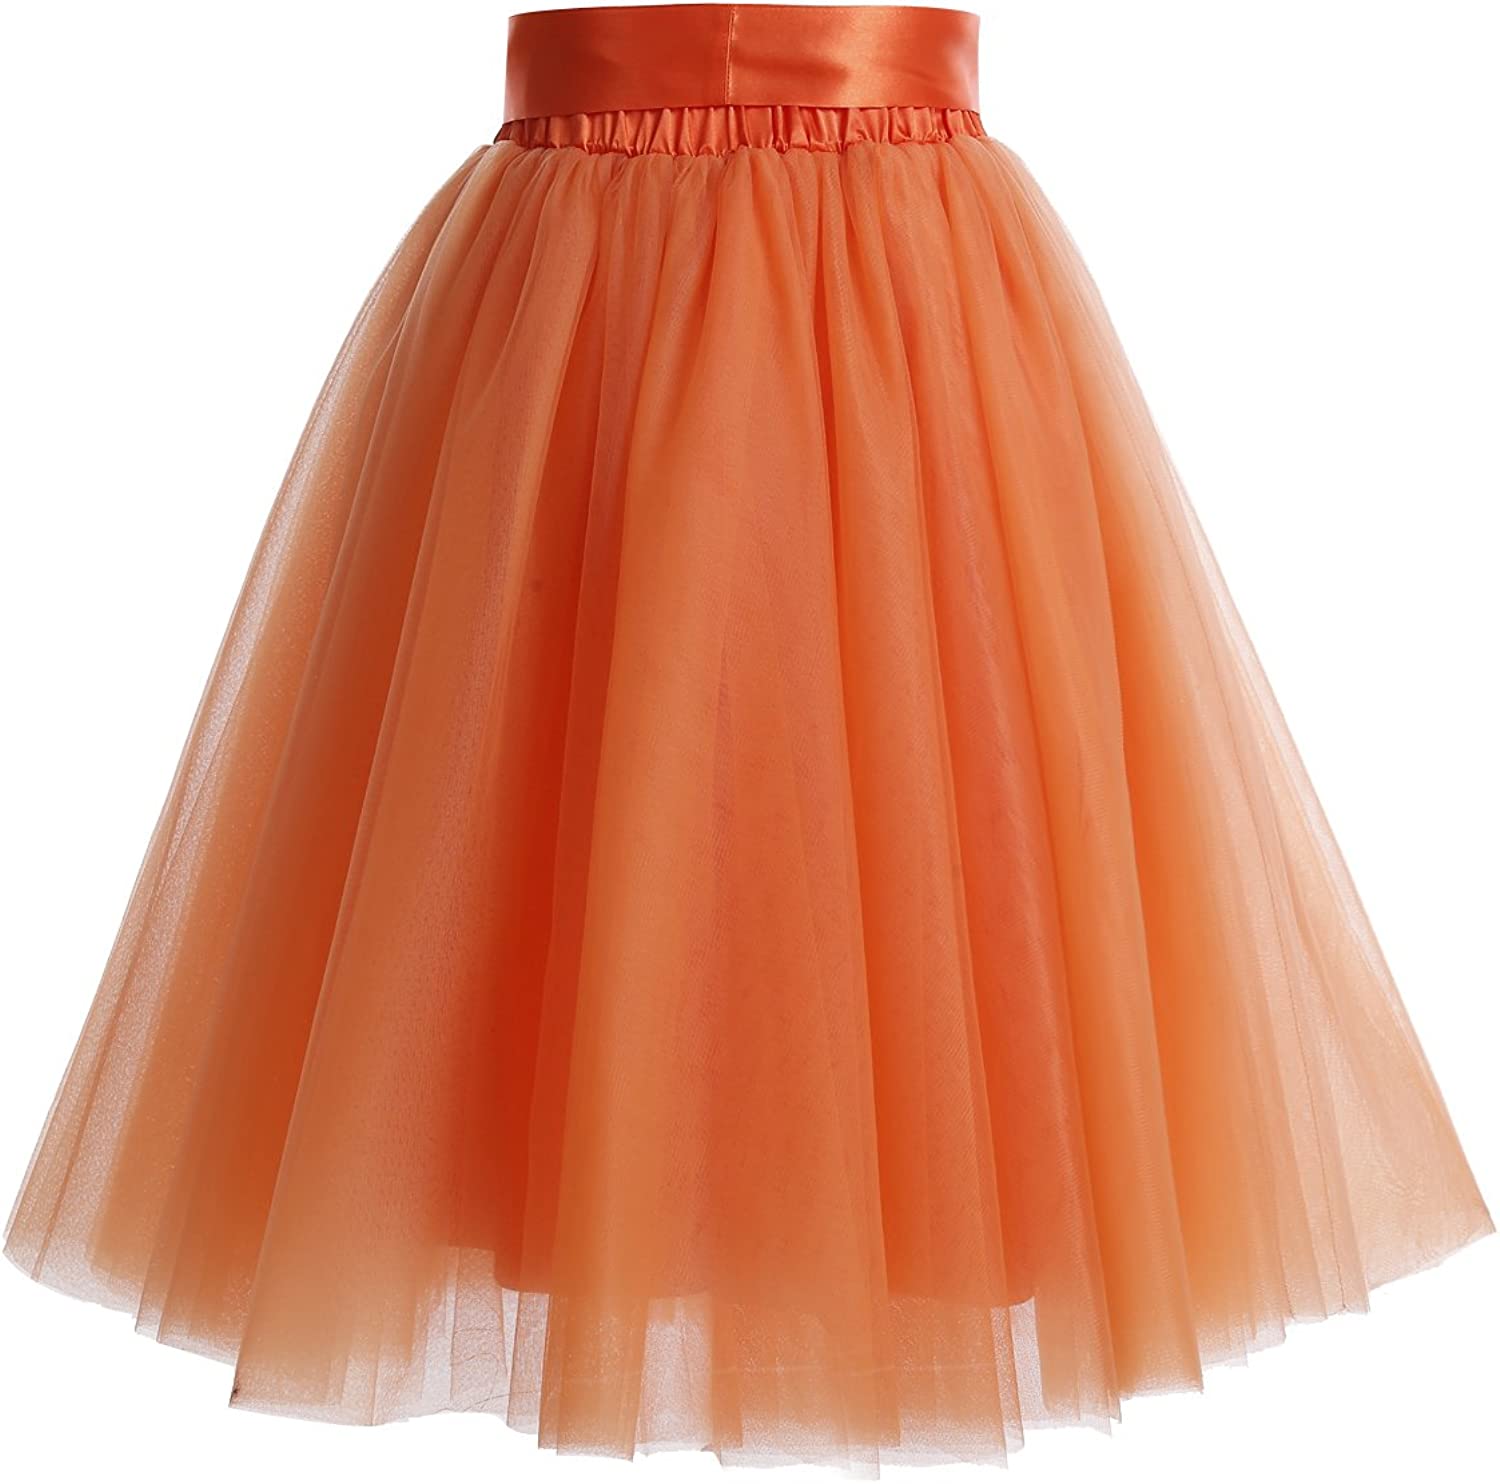 DRESSTELLS Tulle Skirts for Women Knee Length Long Adult Tutu Layered Short Prom Party Midi Skirt